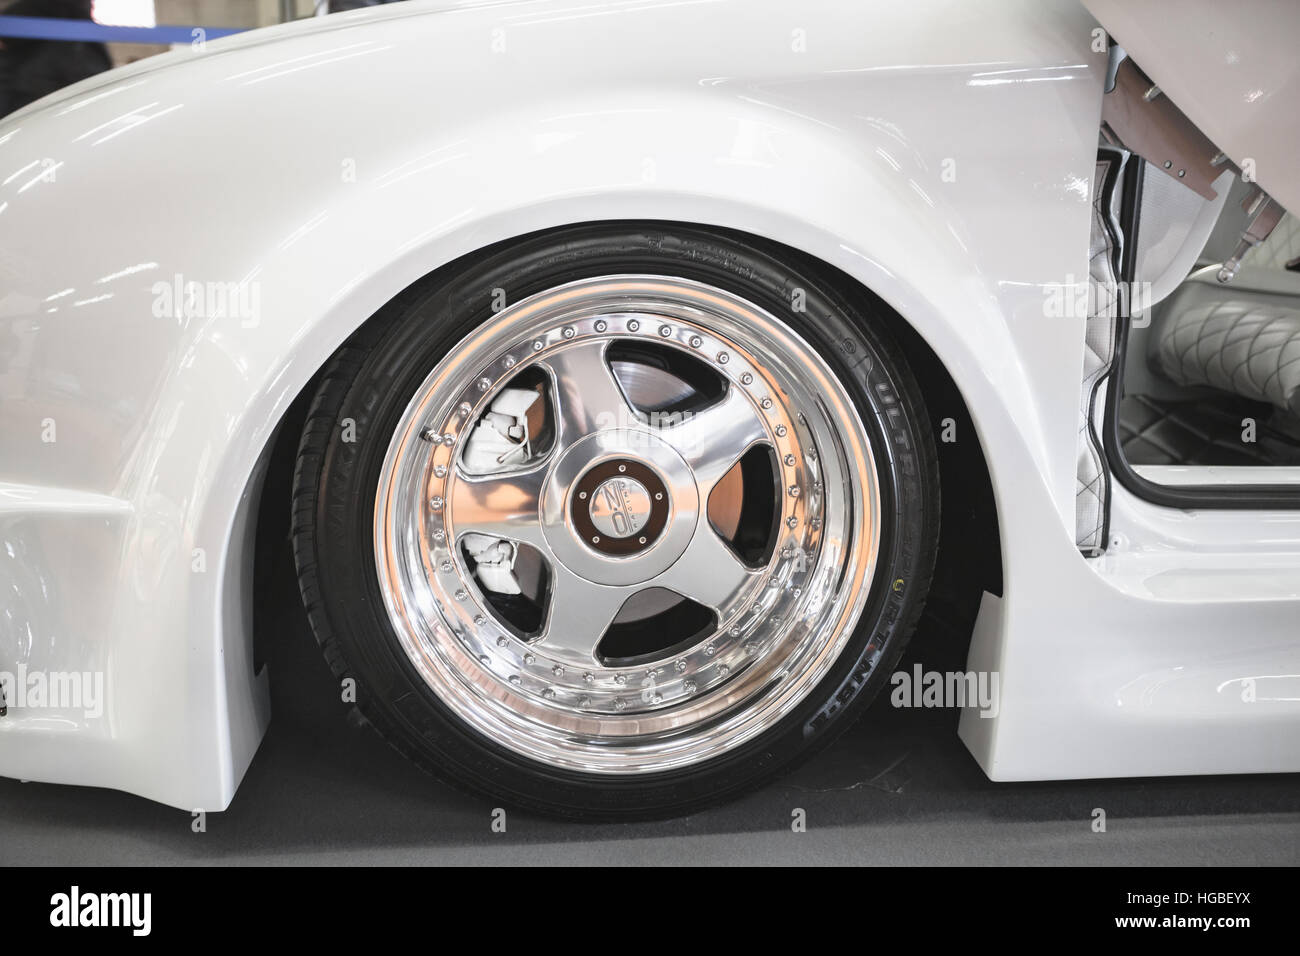 Italy, Bologna motor show 2016, OZ rim wheel on a tunned Alfa Romeo 147 Stock Photo